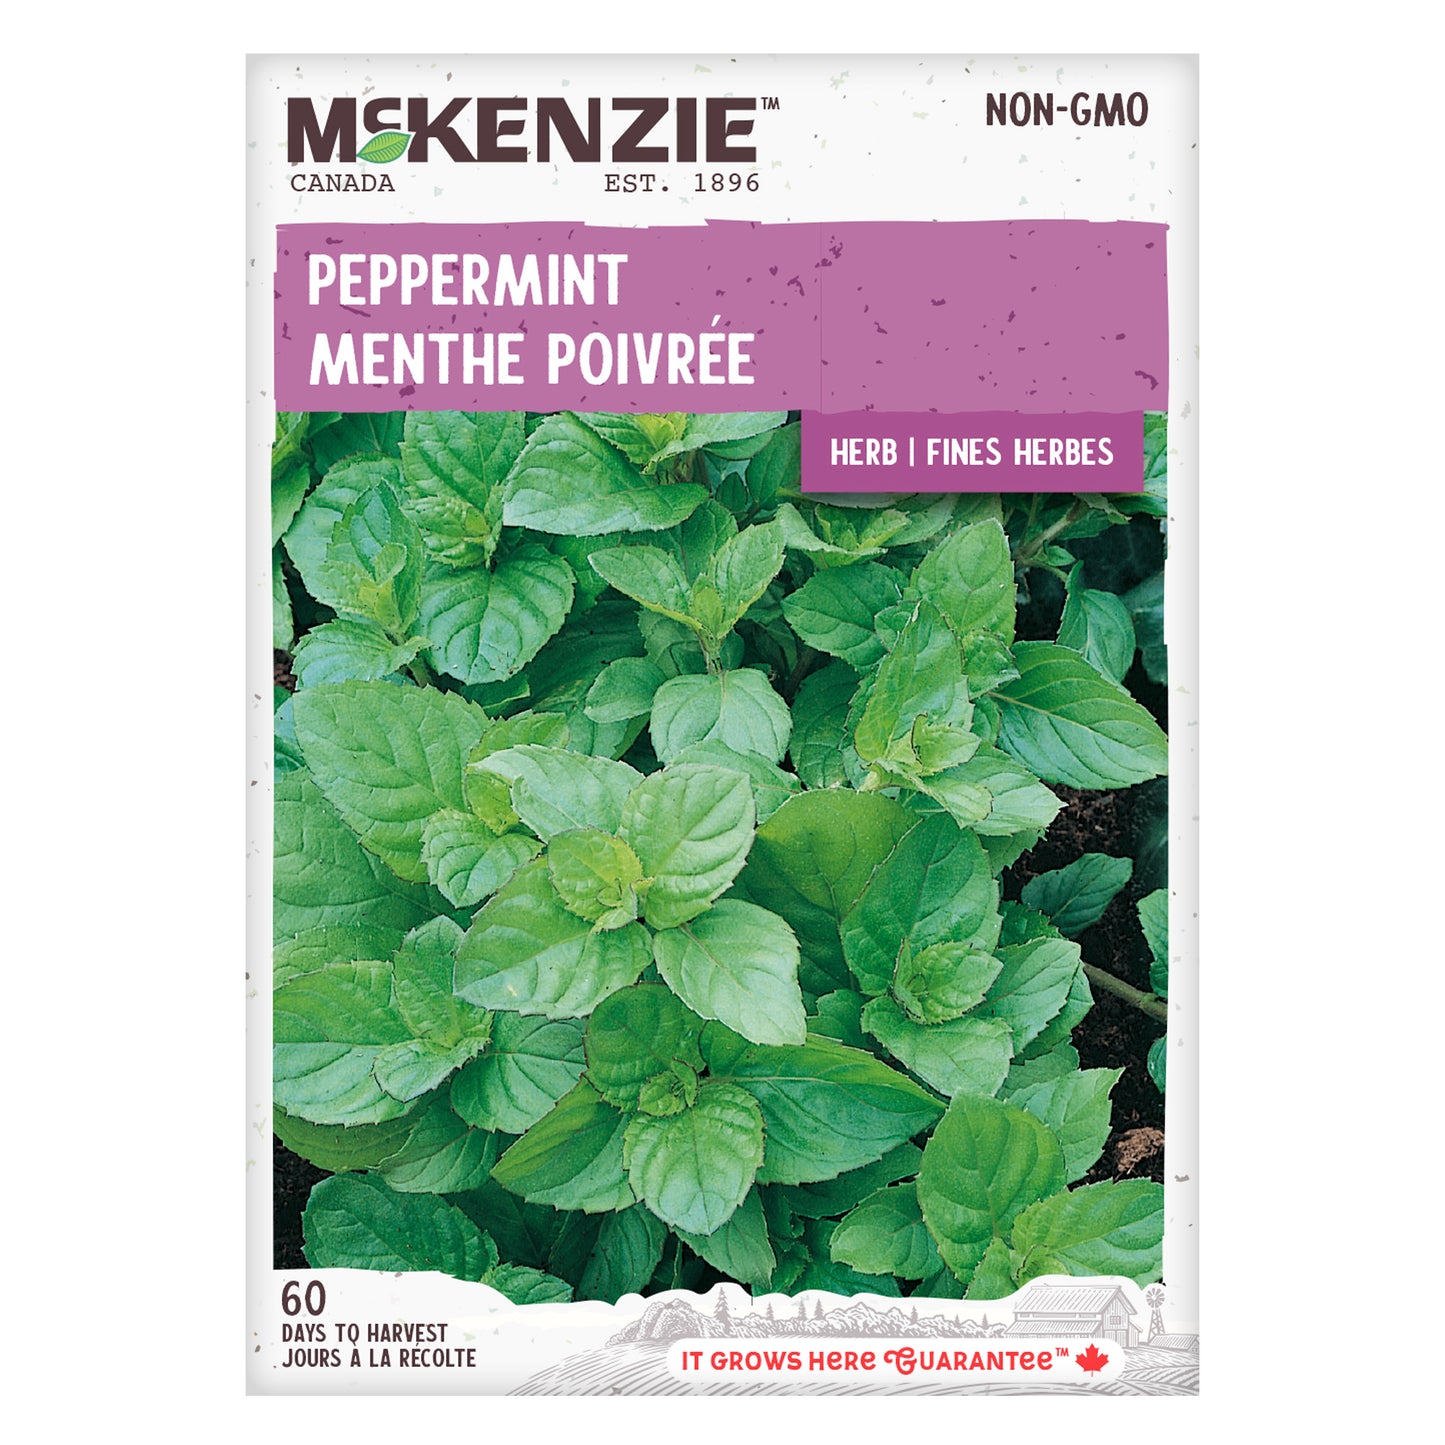 Peppermint Seeds